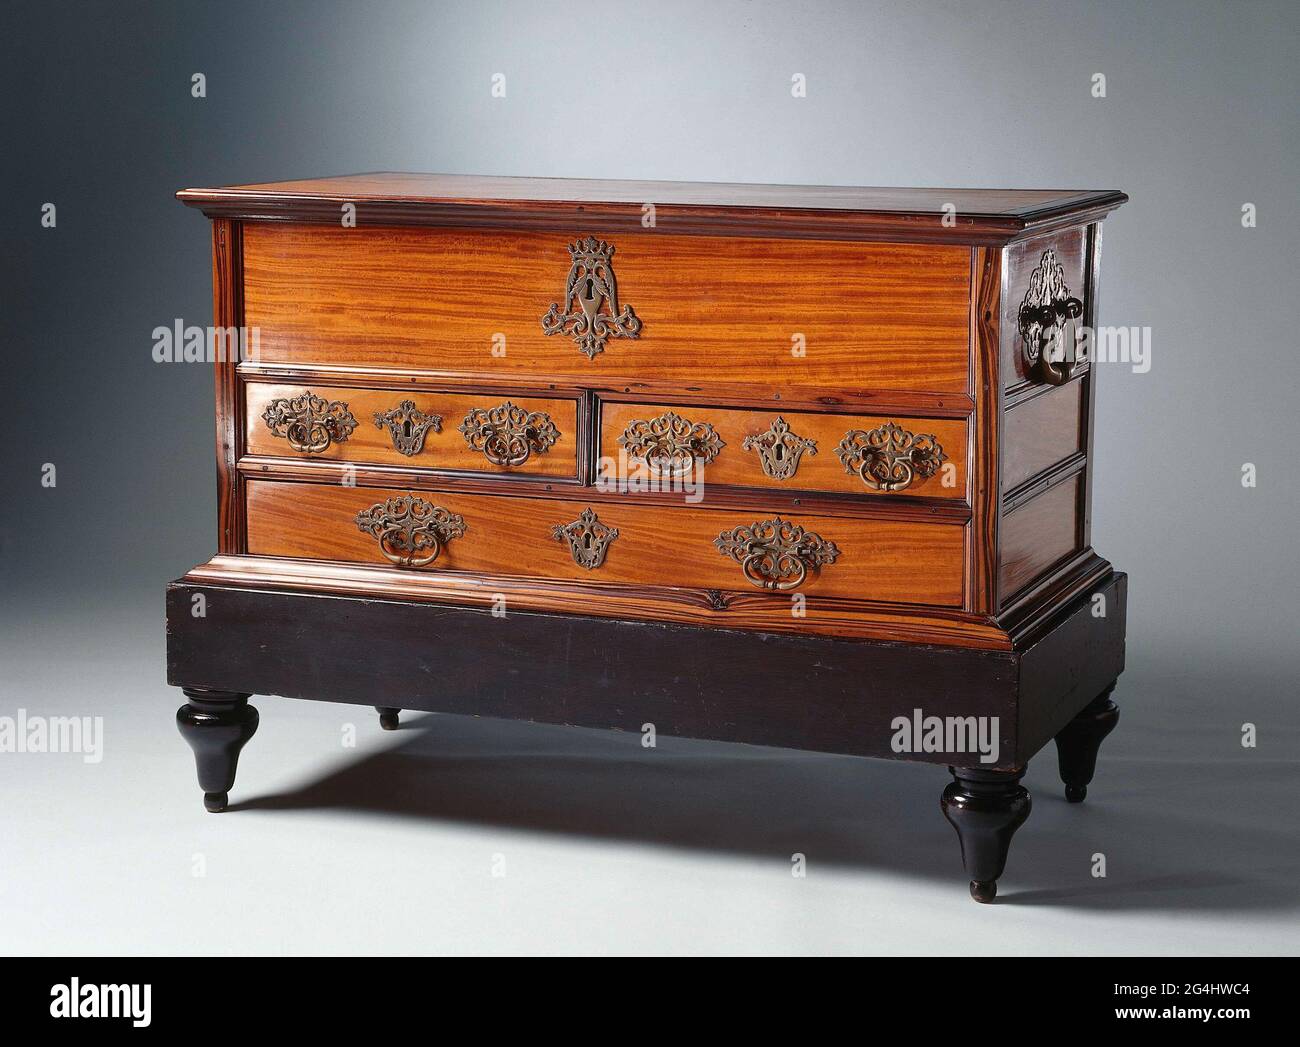 Les coffres étaient des meubles importants pour les employés de la Dutch  East India Company (VOC), car ils voyageraient et se délocalisaient  souvent. Avec ses multiples tiroirs et son grand compartiment